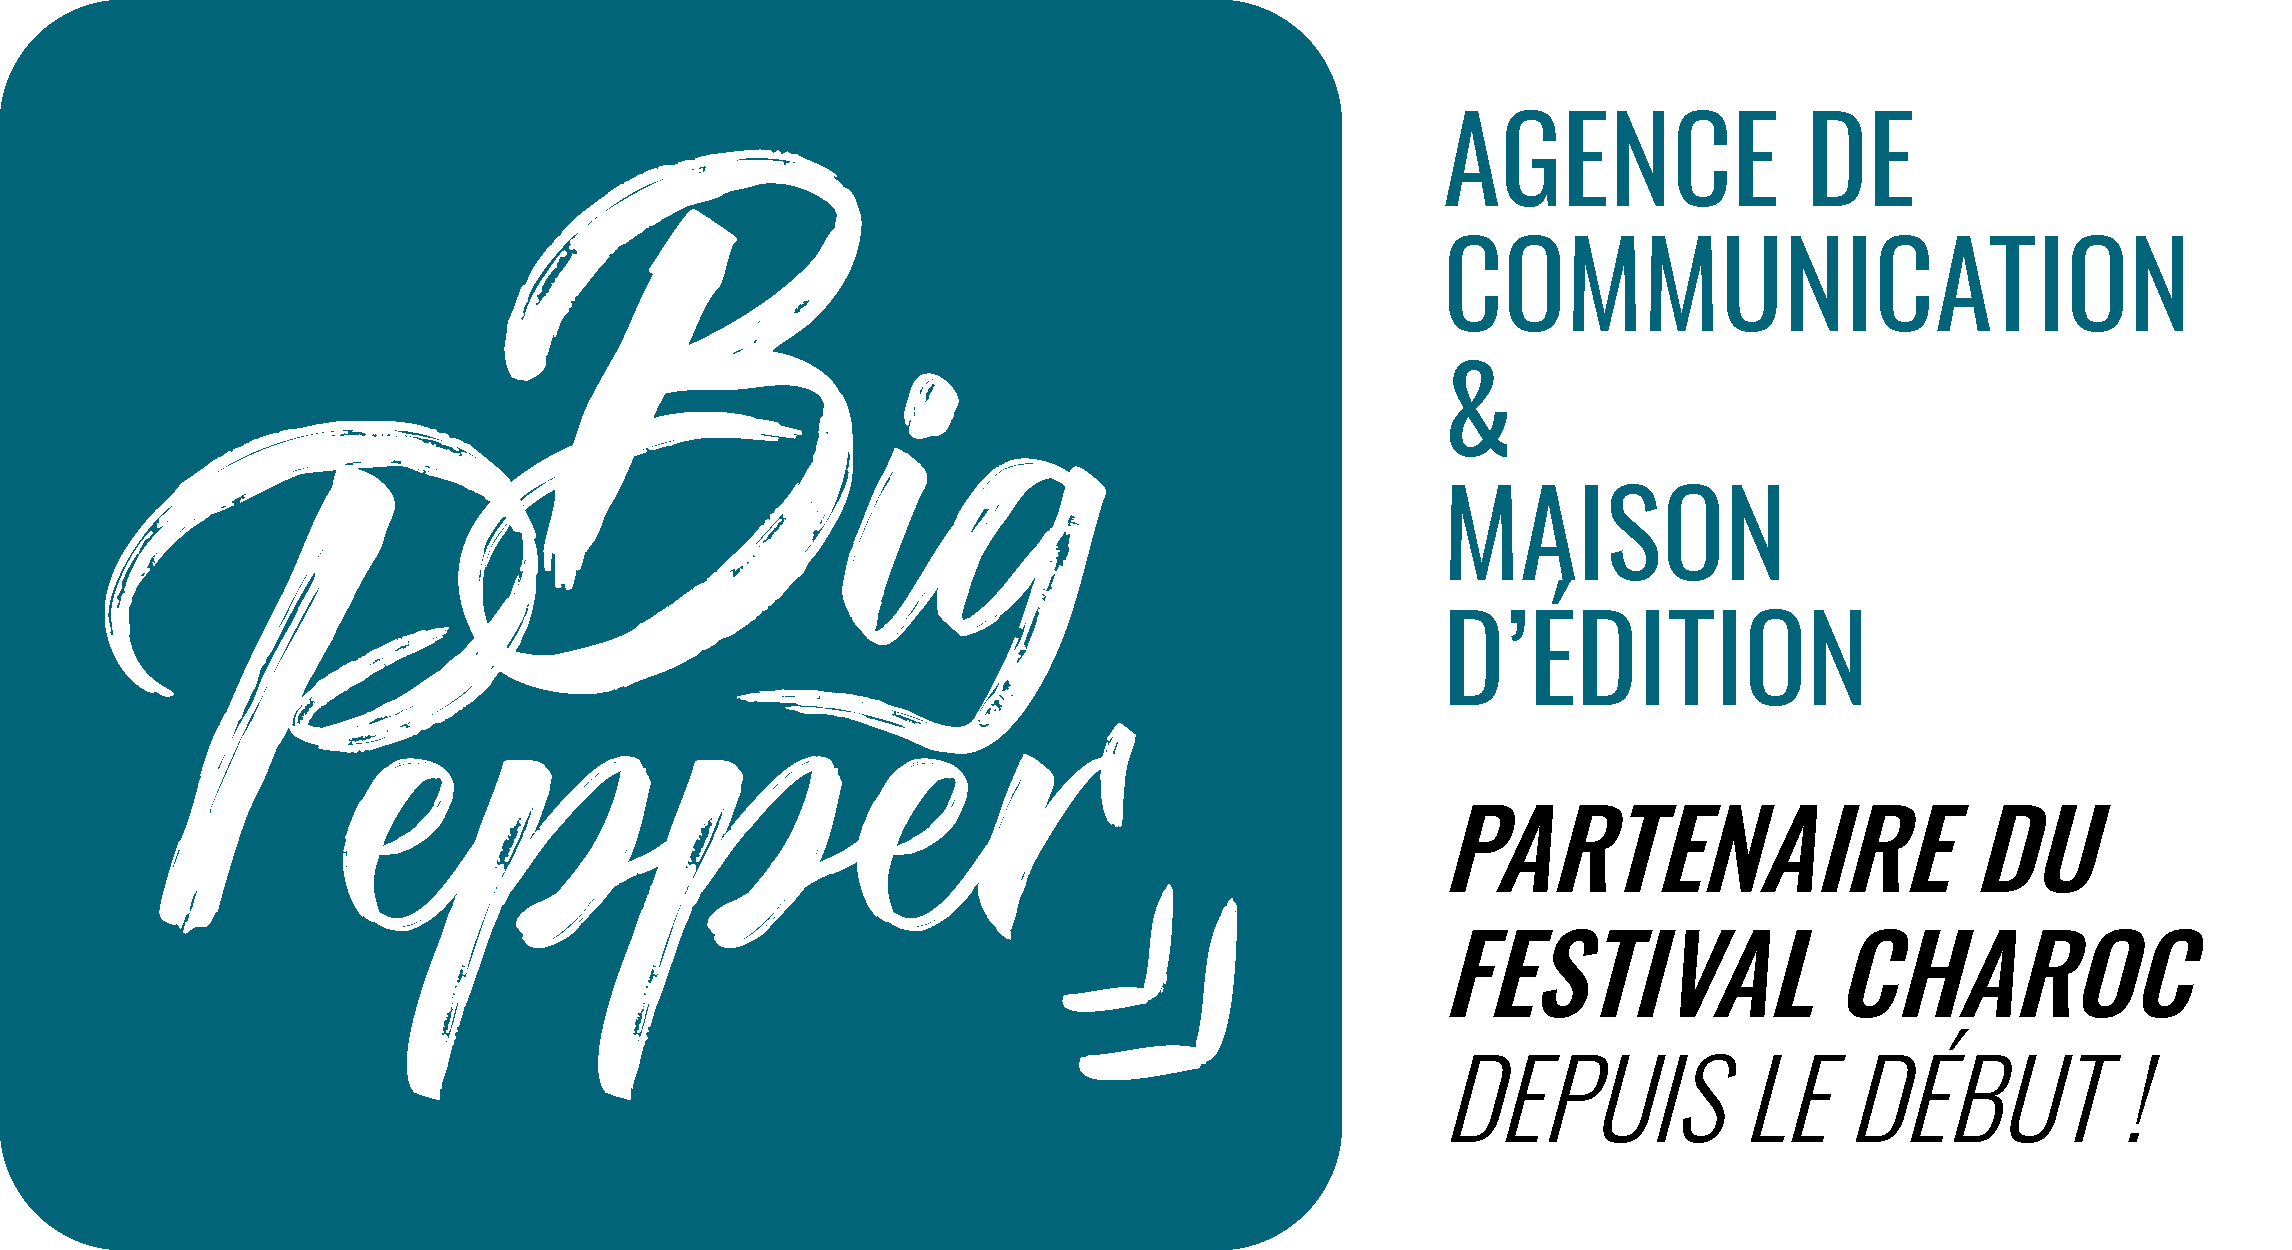 Big Pepper agence de communication et maison d'édition partenaire du festival charoc